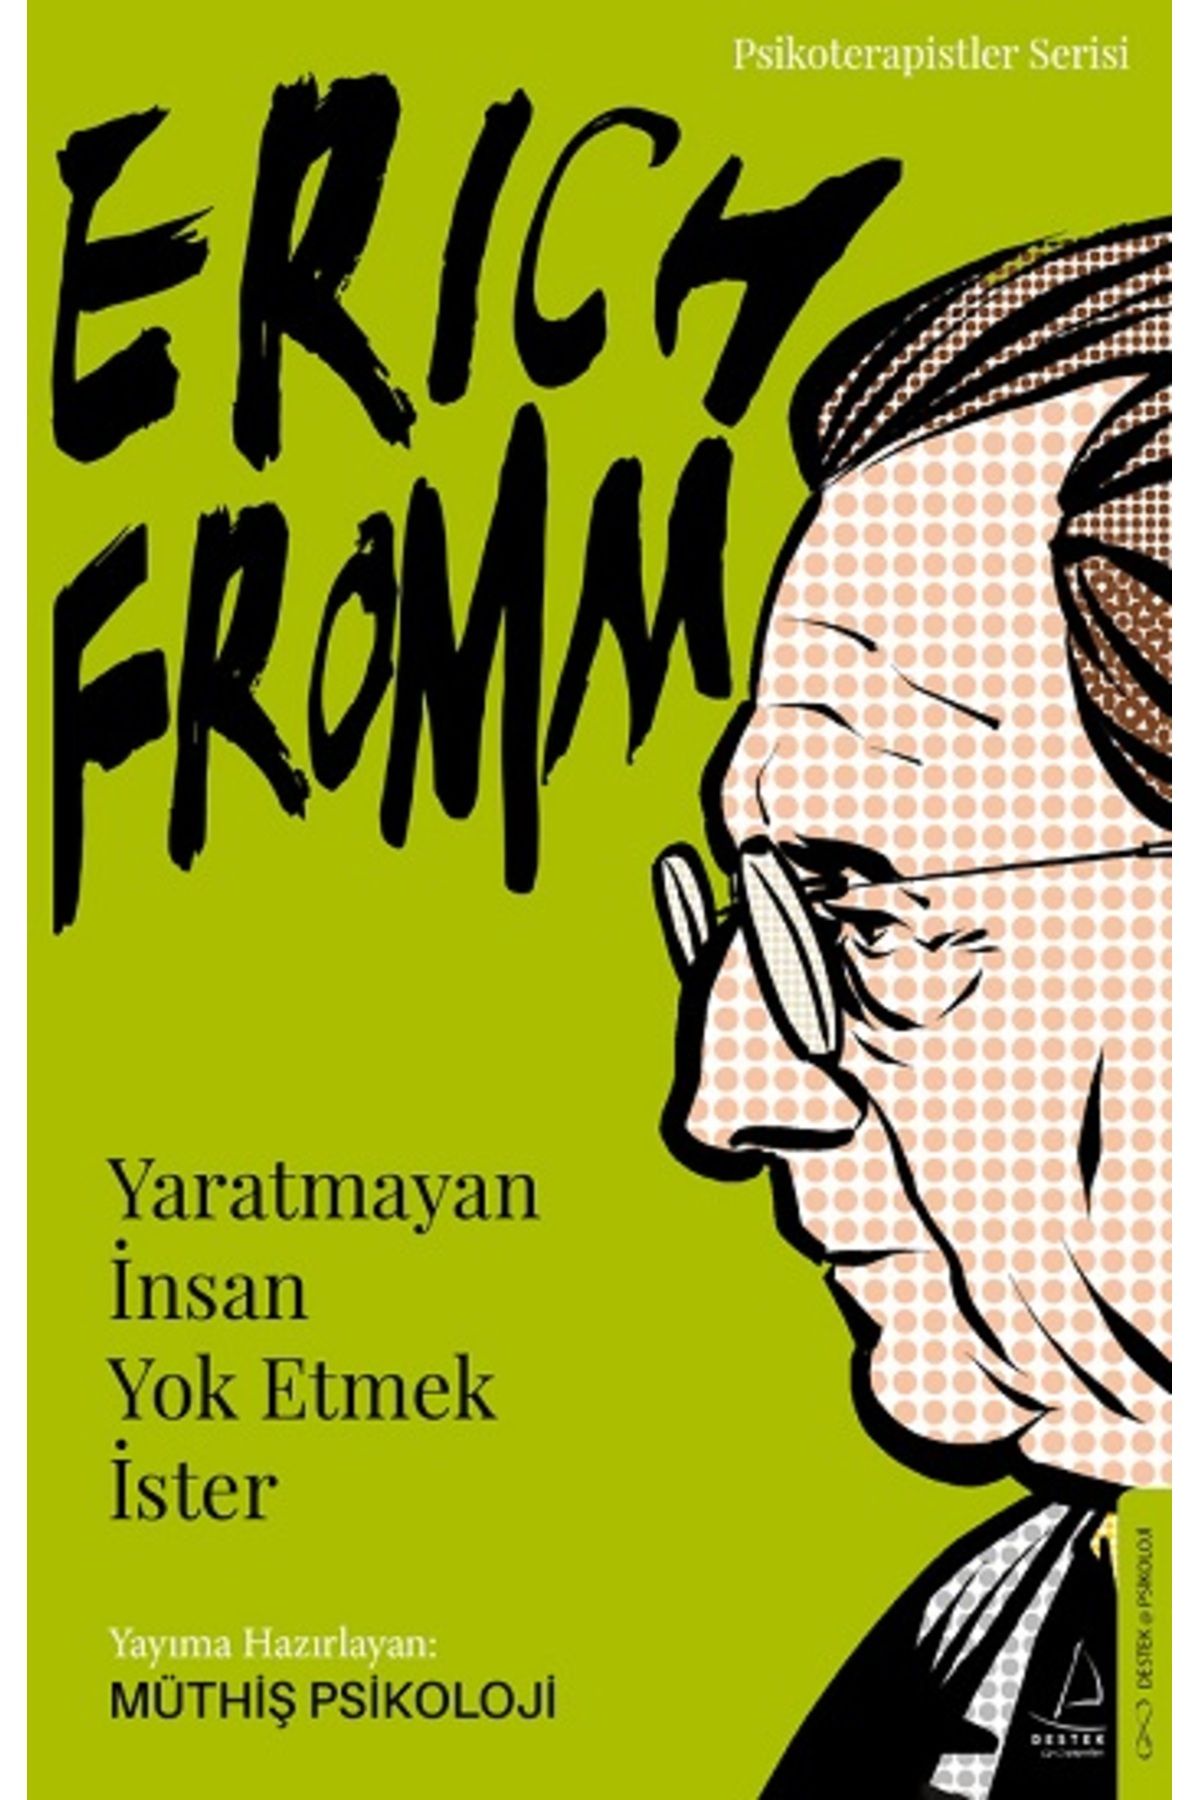 Destek Yayınları Erich Fromm-Yaratmayan İnsan Yok Etmek İster kitabı - Müthiş Psikoloji - Destek Yayınları